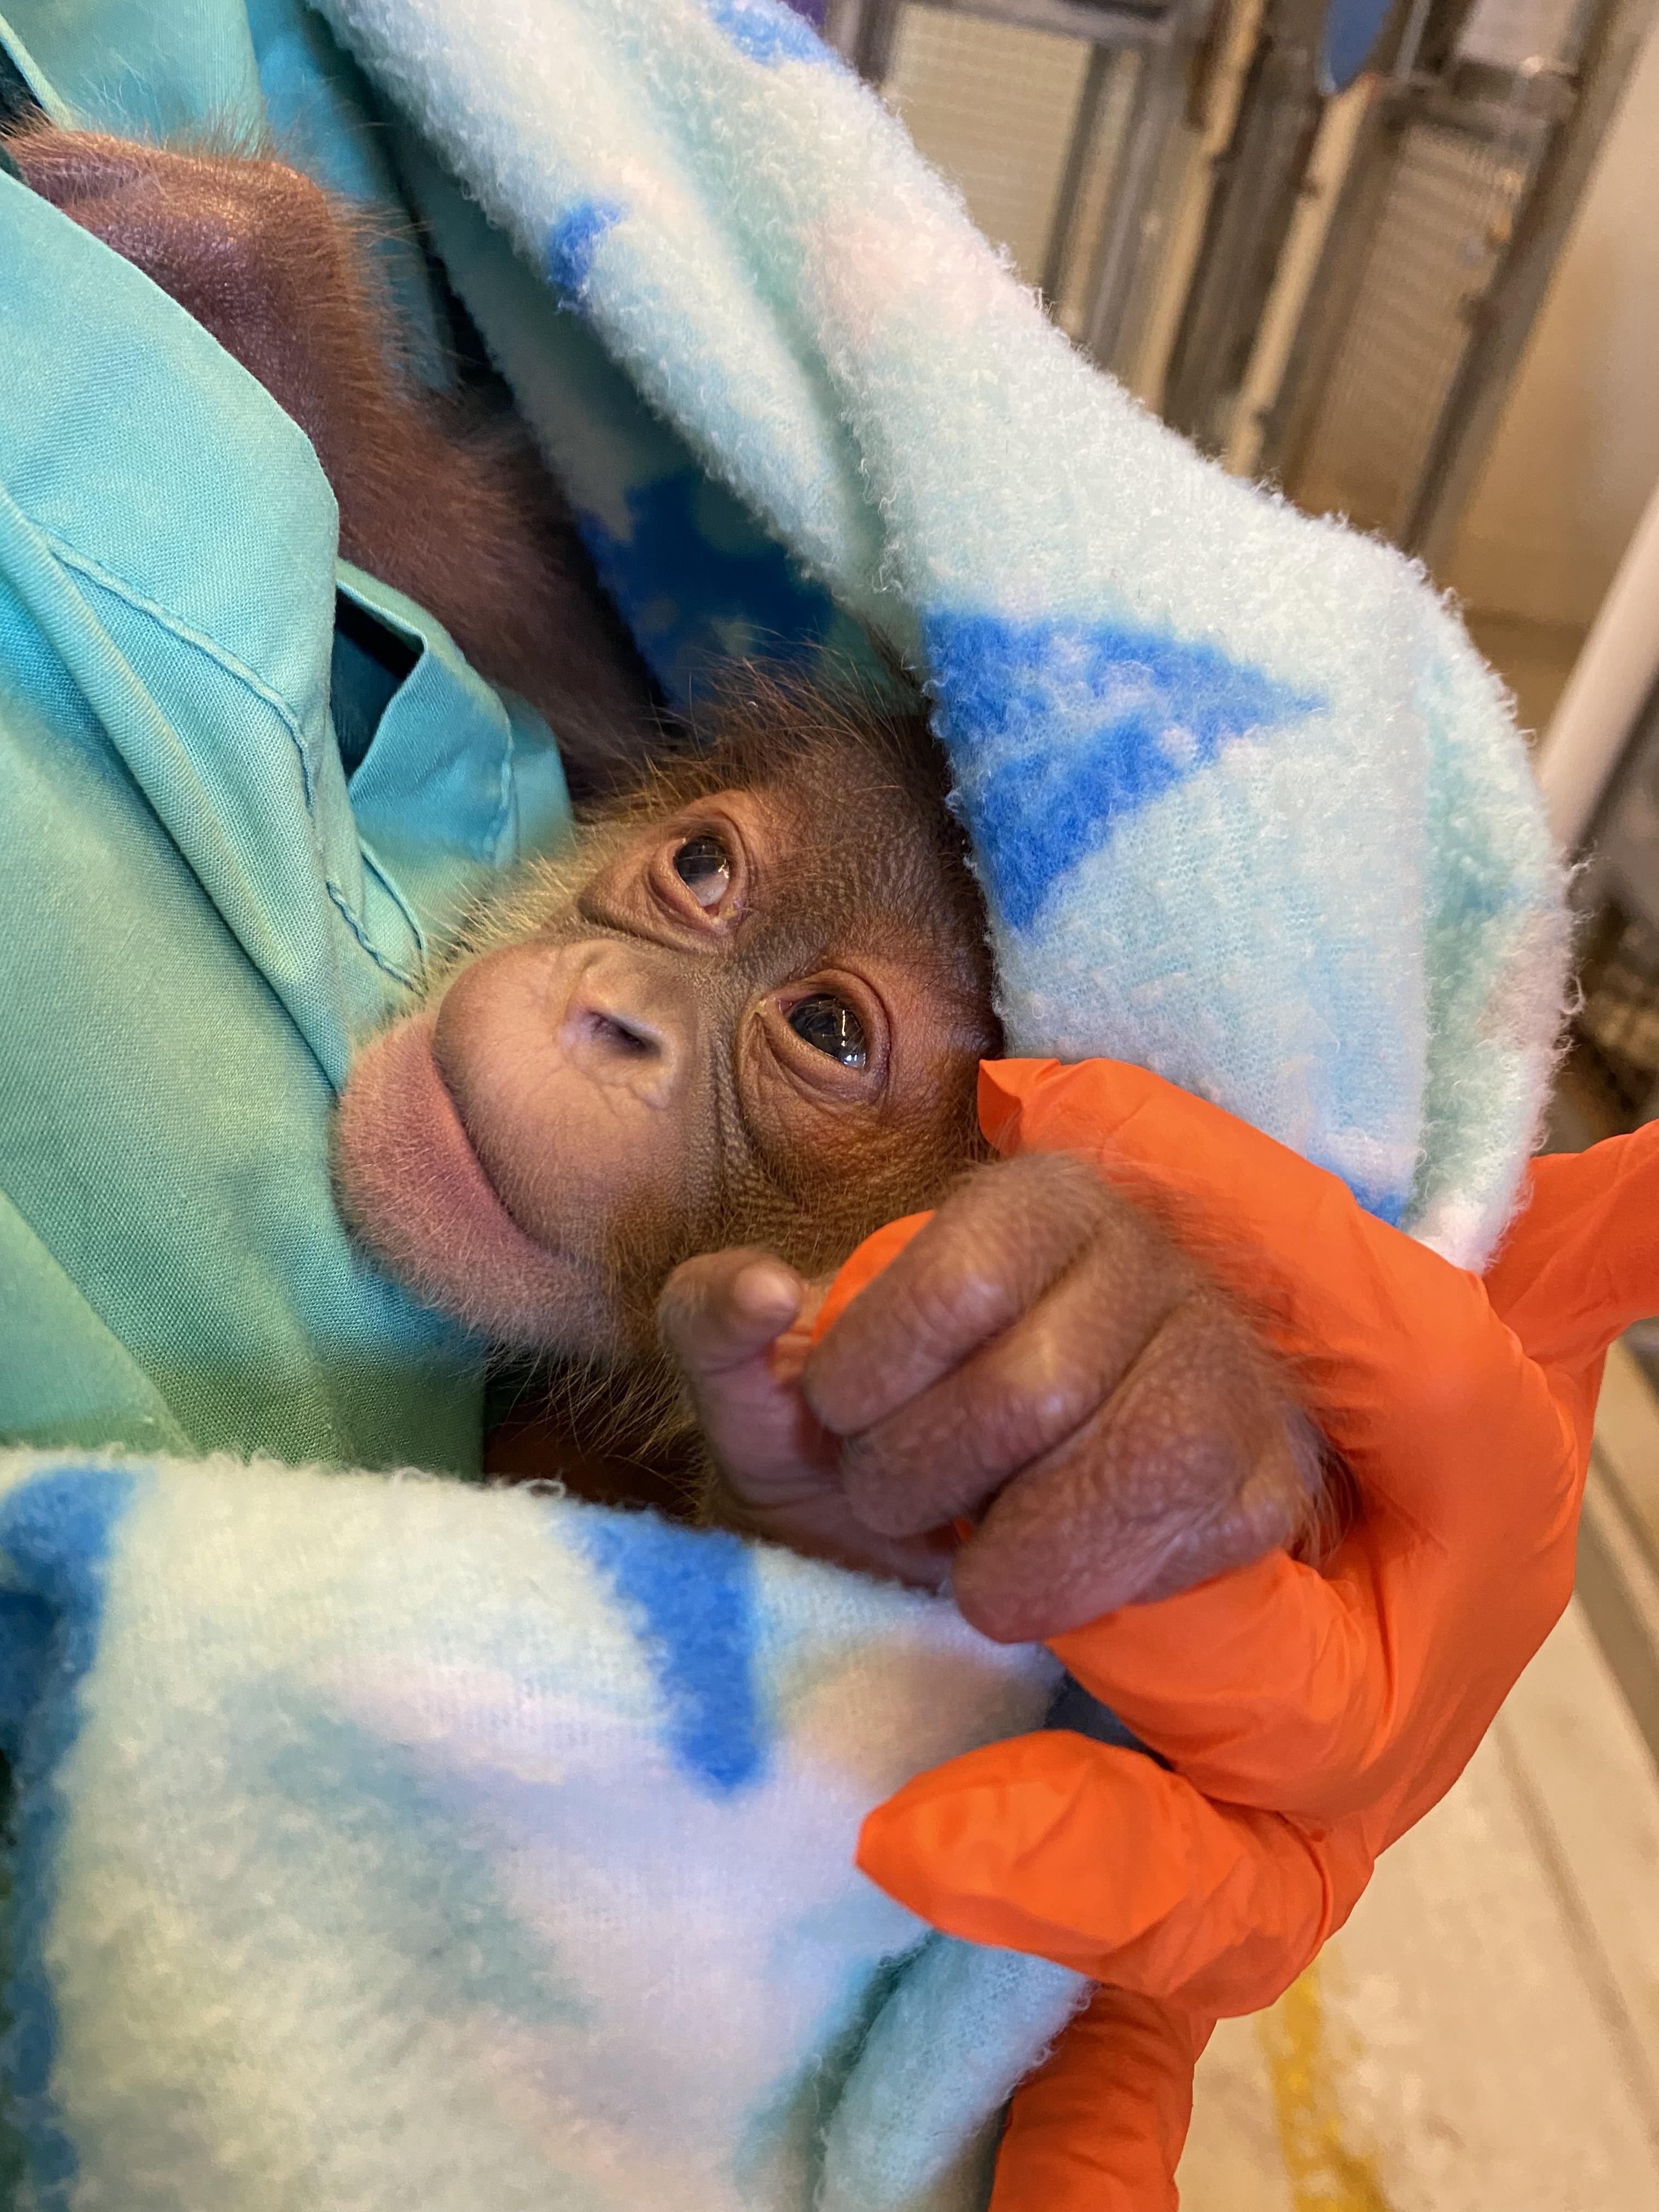 Menari desenvolveu rapidamente instintos maternos, já que observou a gestação de outras duas orangotangos (Foto: Zoológico de Audubon )